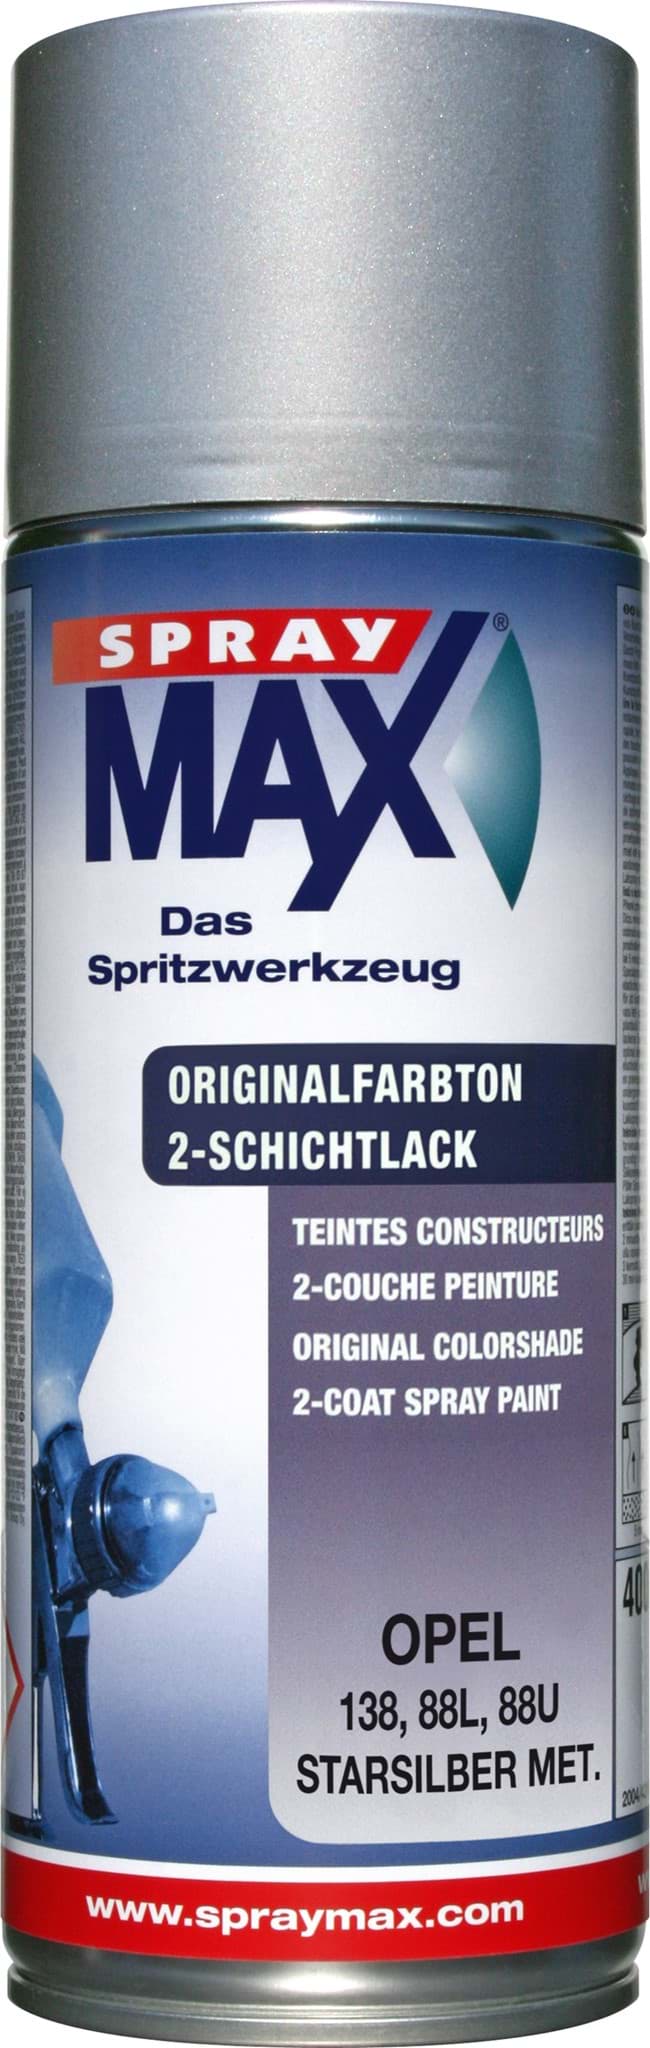 SprayMax Originalfarbton für Opel 138 starsilber met. resmi